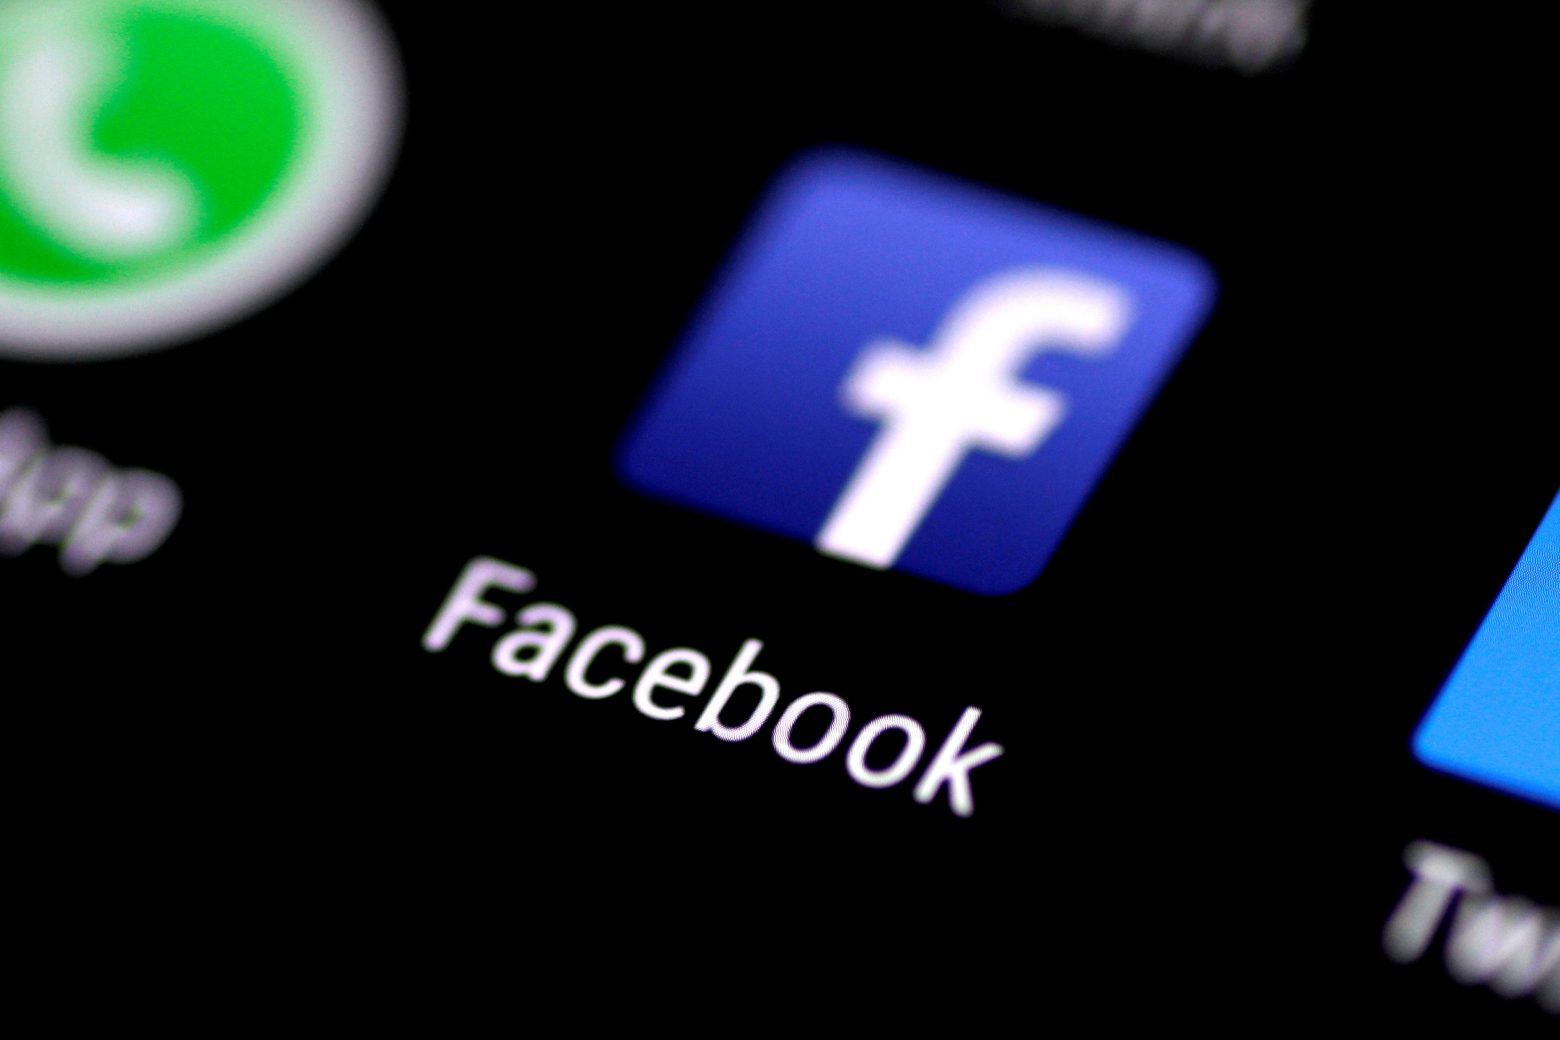 Facebook – Στον πάγο το λανσάρισμα νέων προϊόντων μετά την κατακραυγή